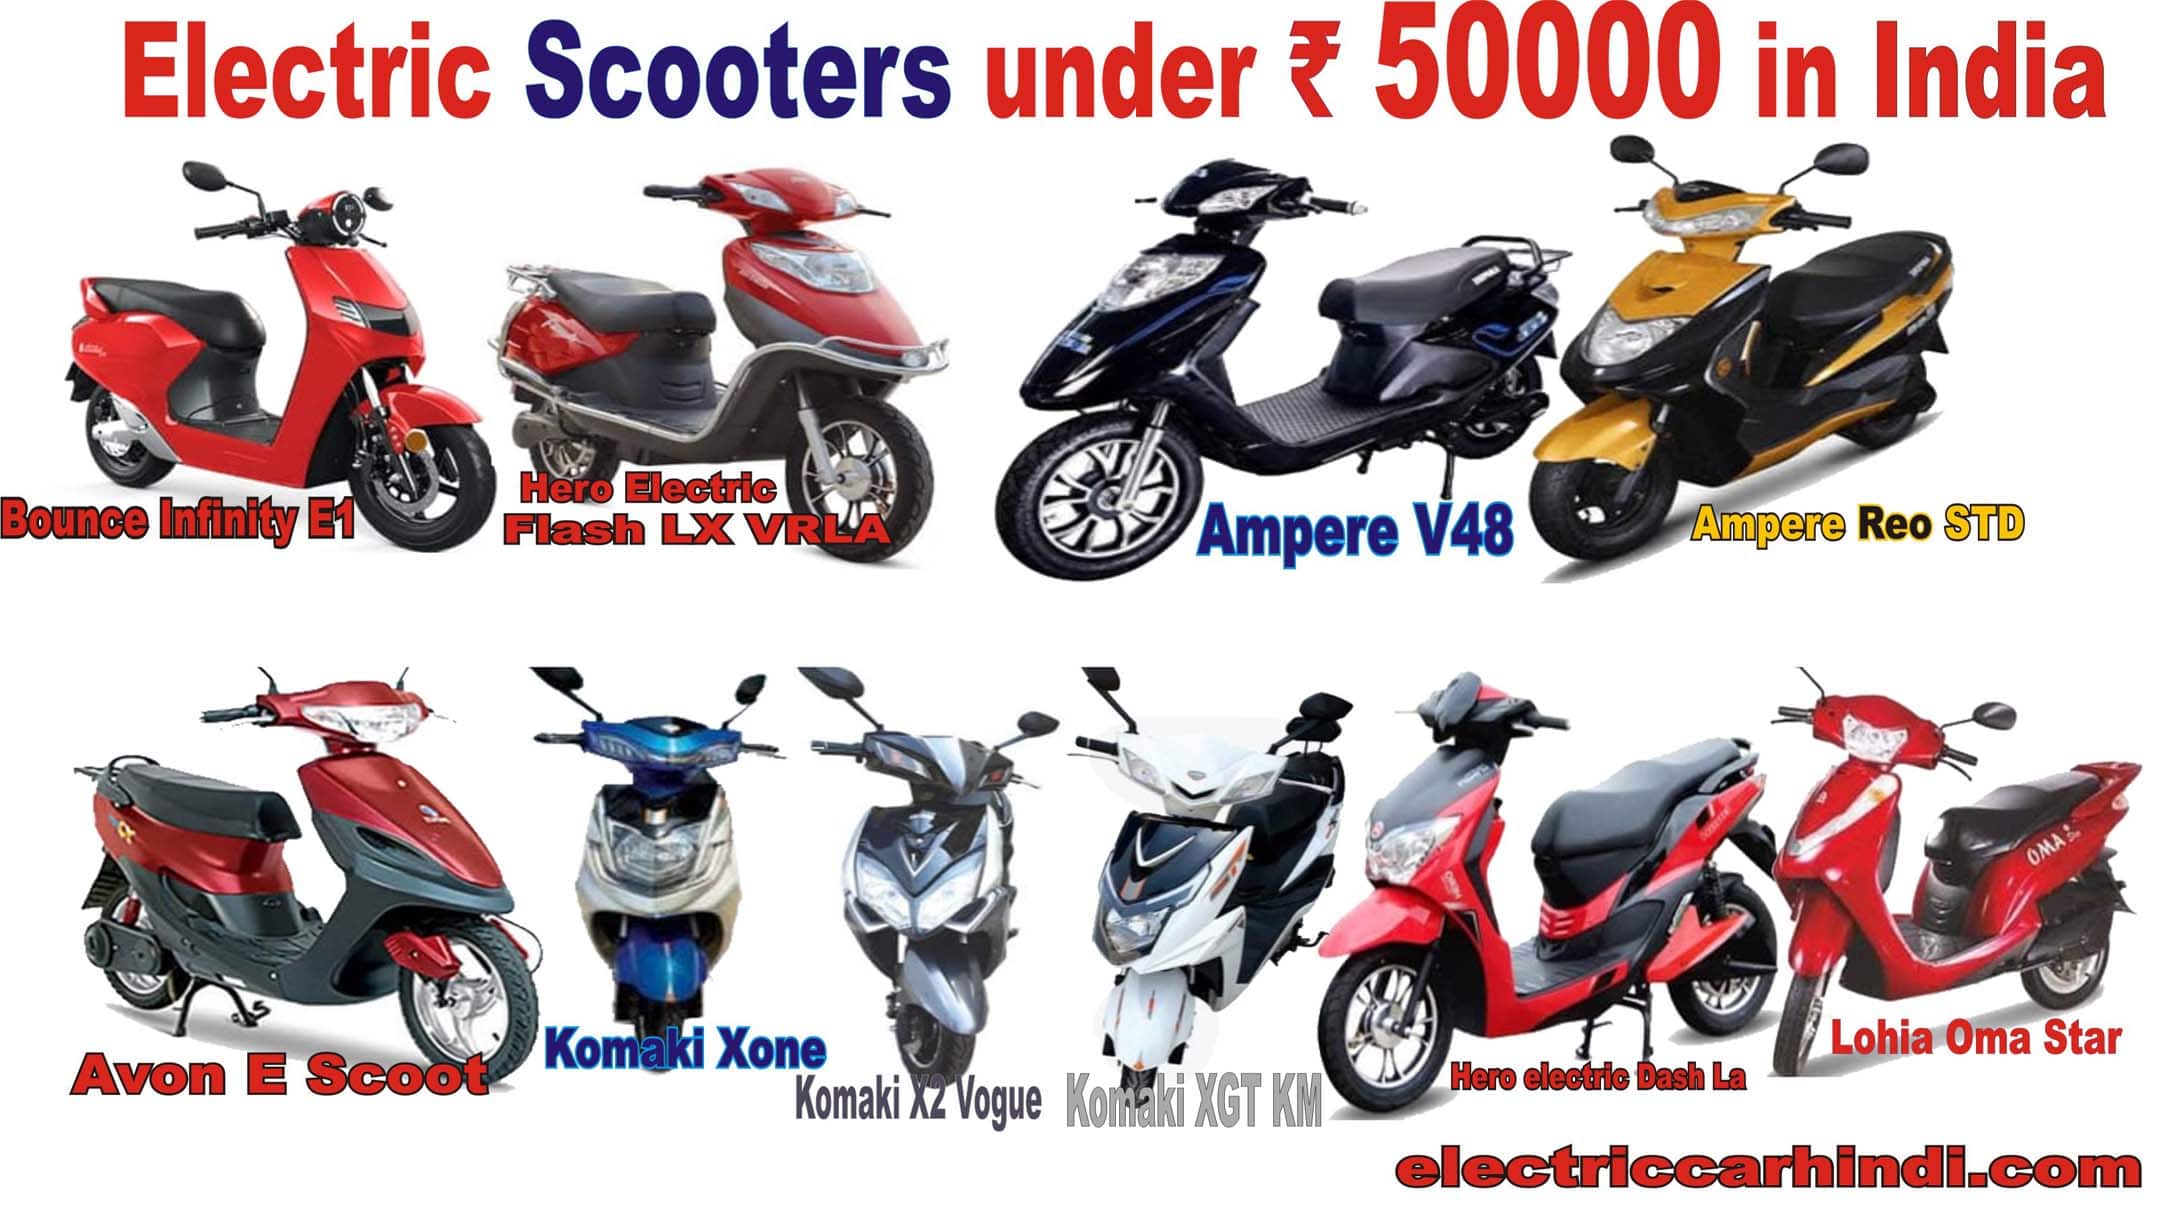 You are currently viewing Electric scooters under 50000 in India | भारत में उपलब्ध टॉप 10 इलेक्ट्रिक स्कूटर अंडर 50,000,जो देते है शानदार बैटरी, रेंज और धांसू लुक